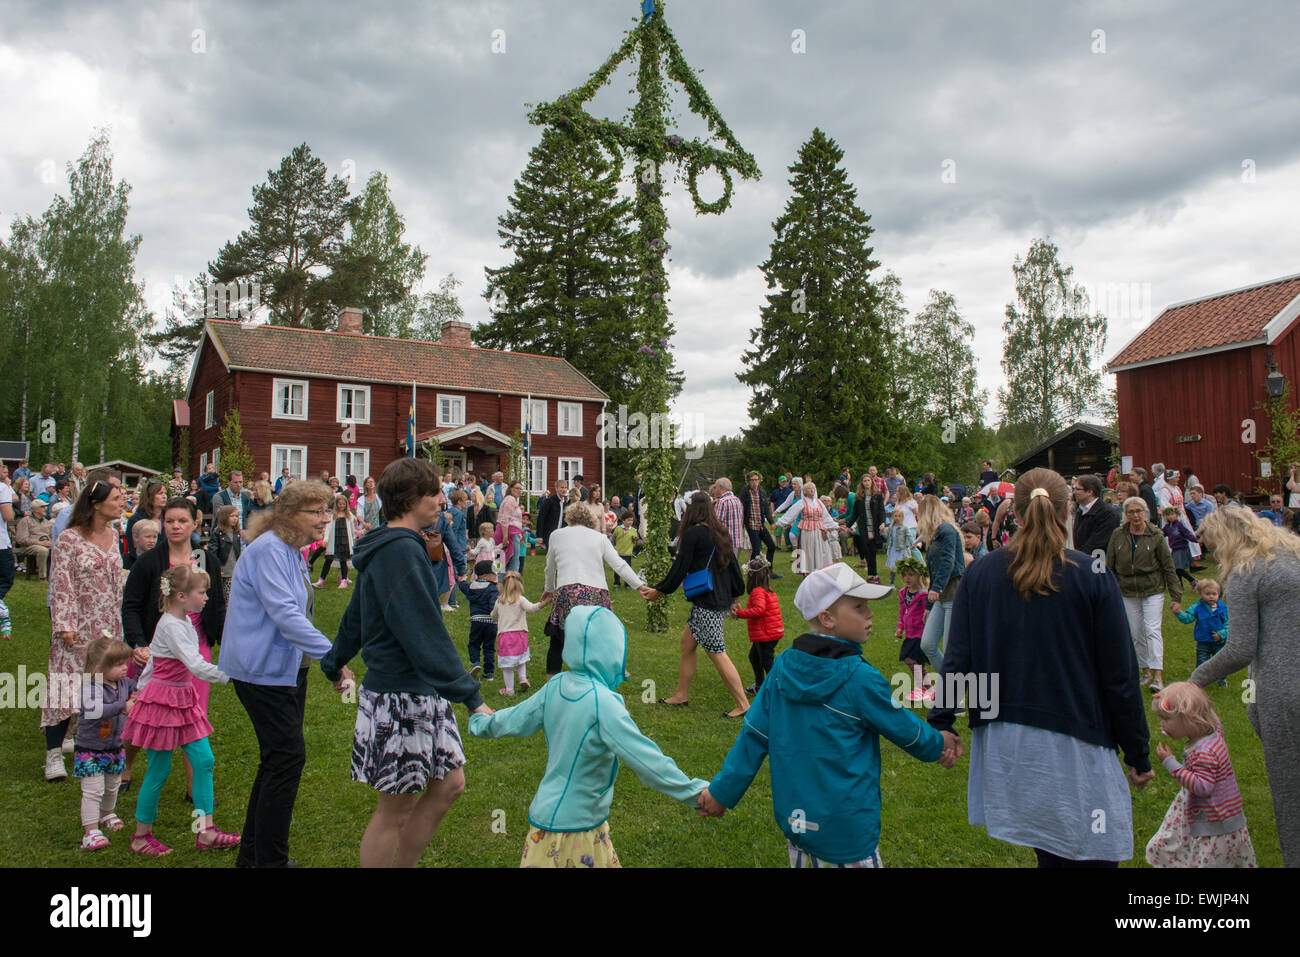 Swedish maypole dance. Stock Photo